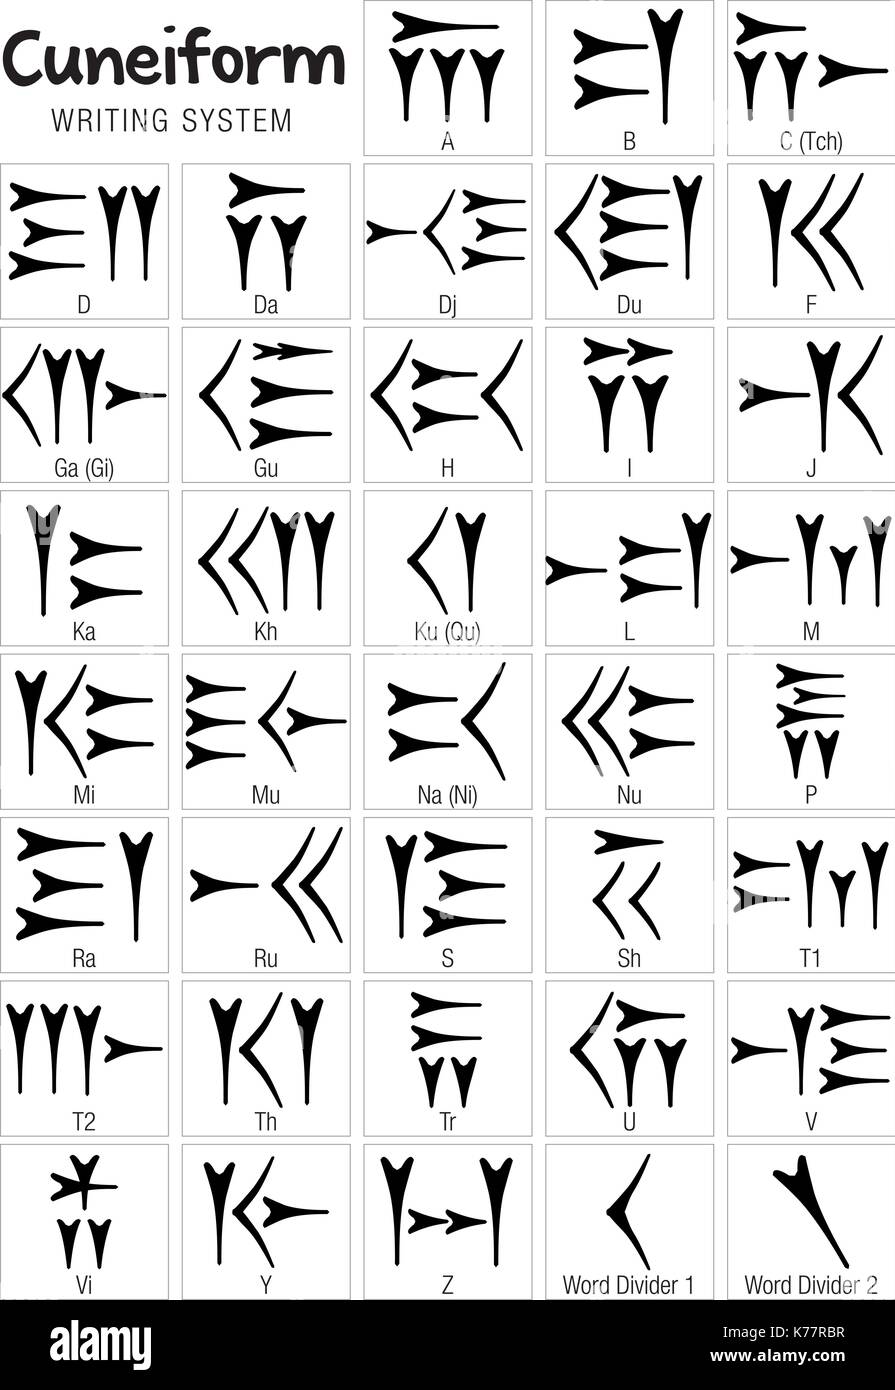 L'écriture cunéiforme est un système d'écriture d'abord développé par les anciens Sumériens de Mésopotamie Illustration de Vecteur